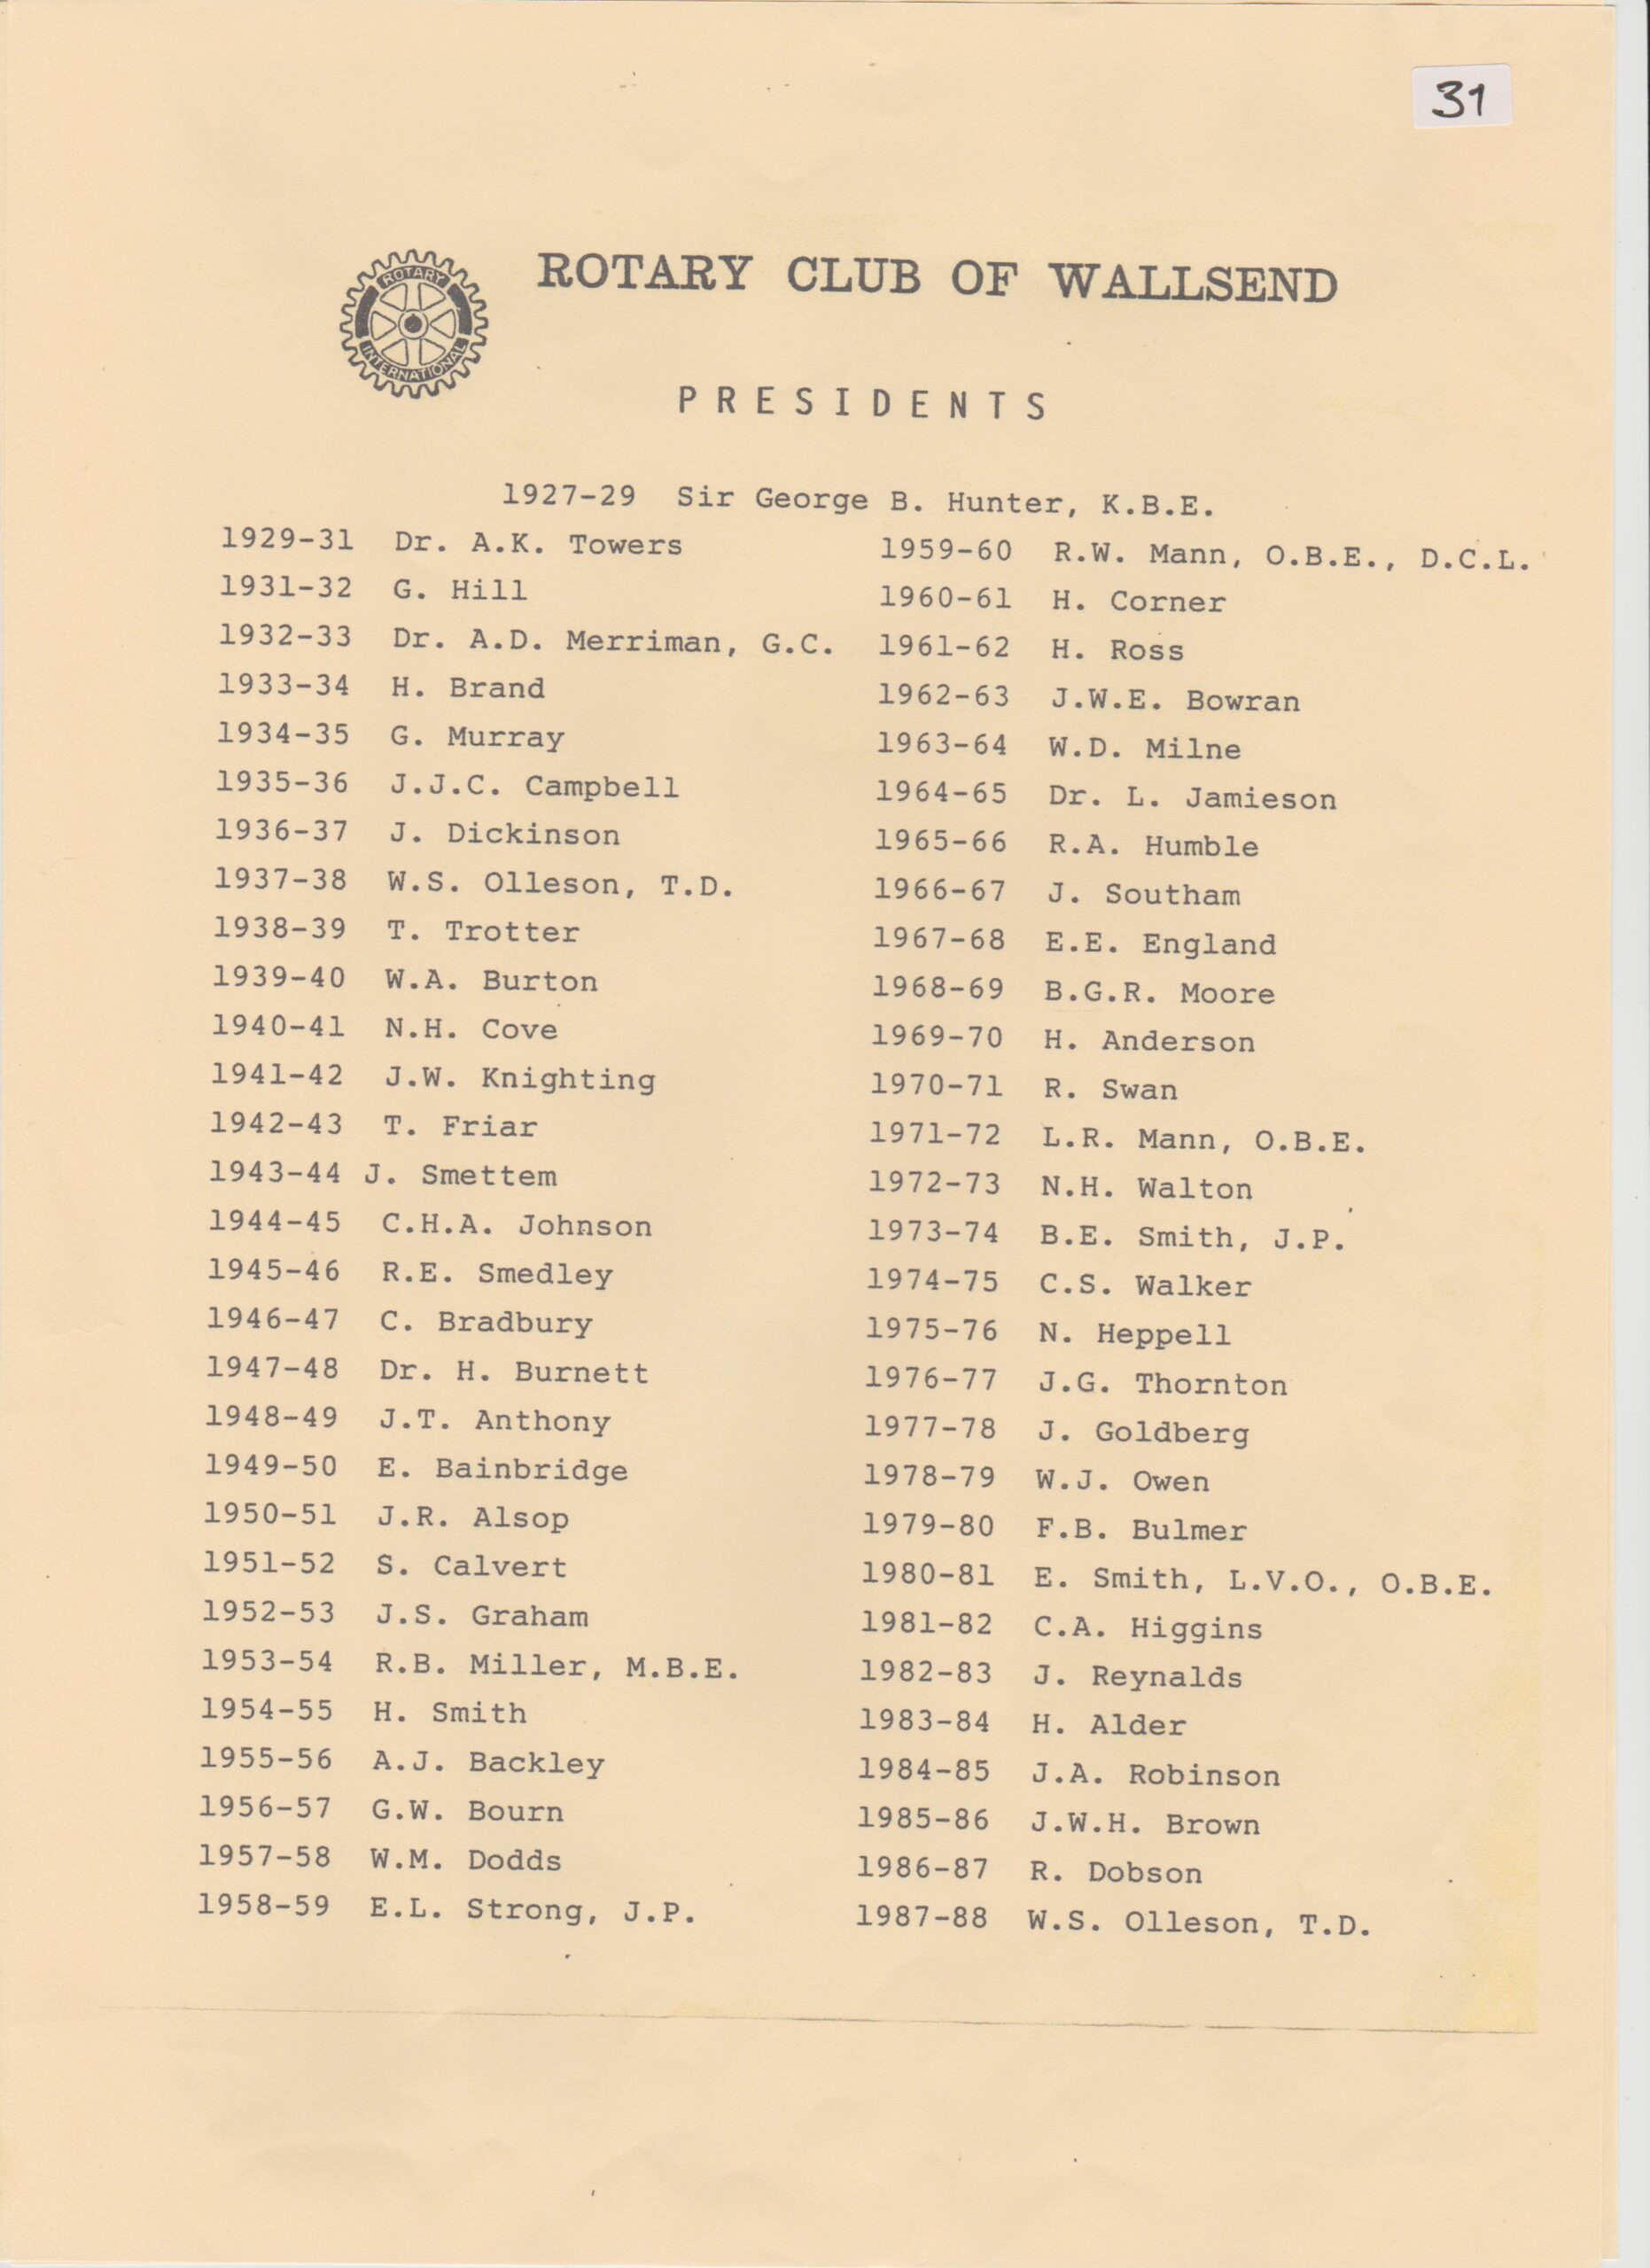 Rotary Club Preidents 1929-1988